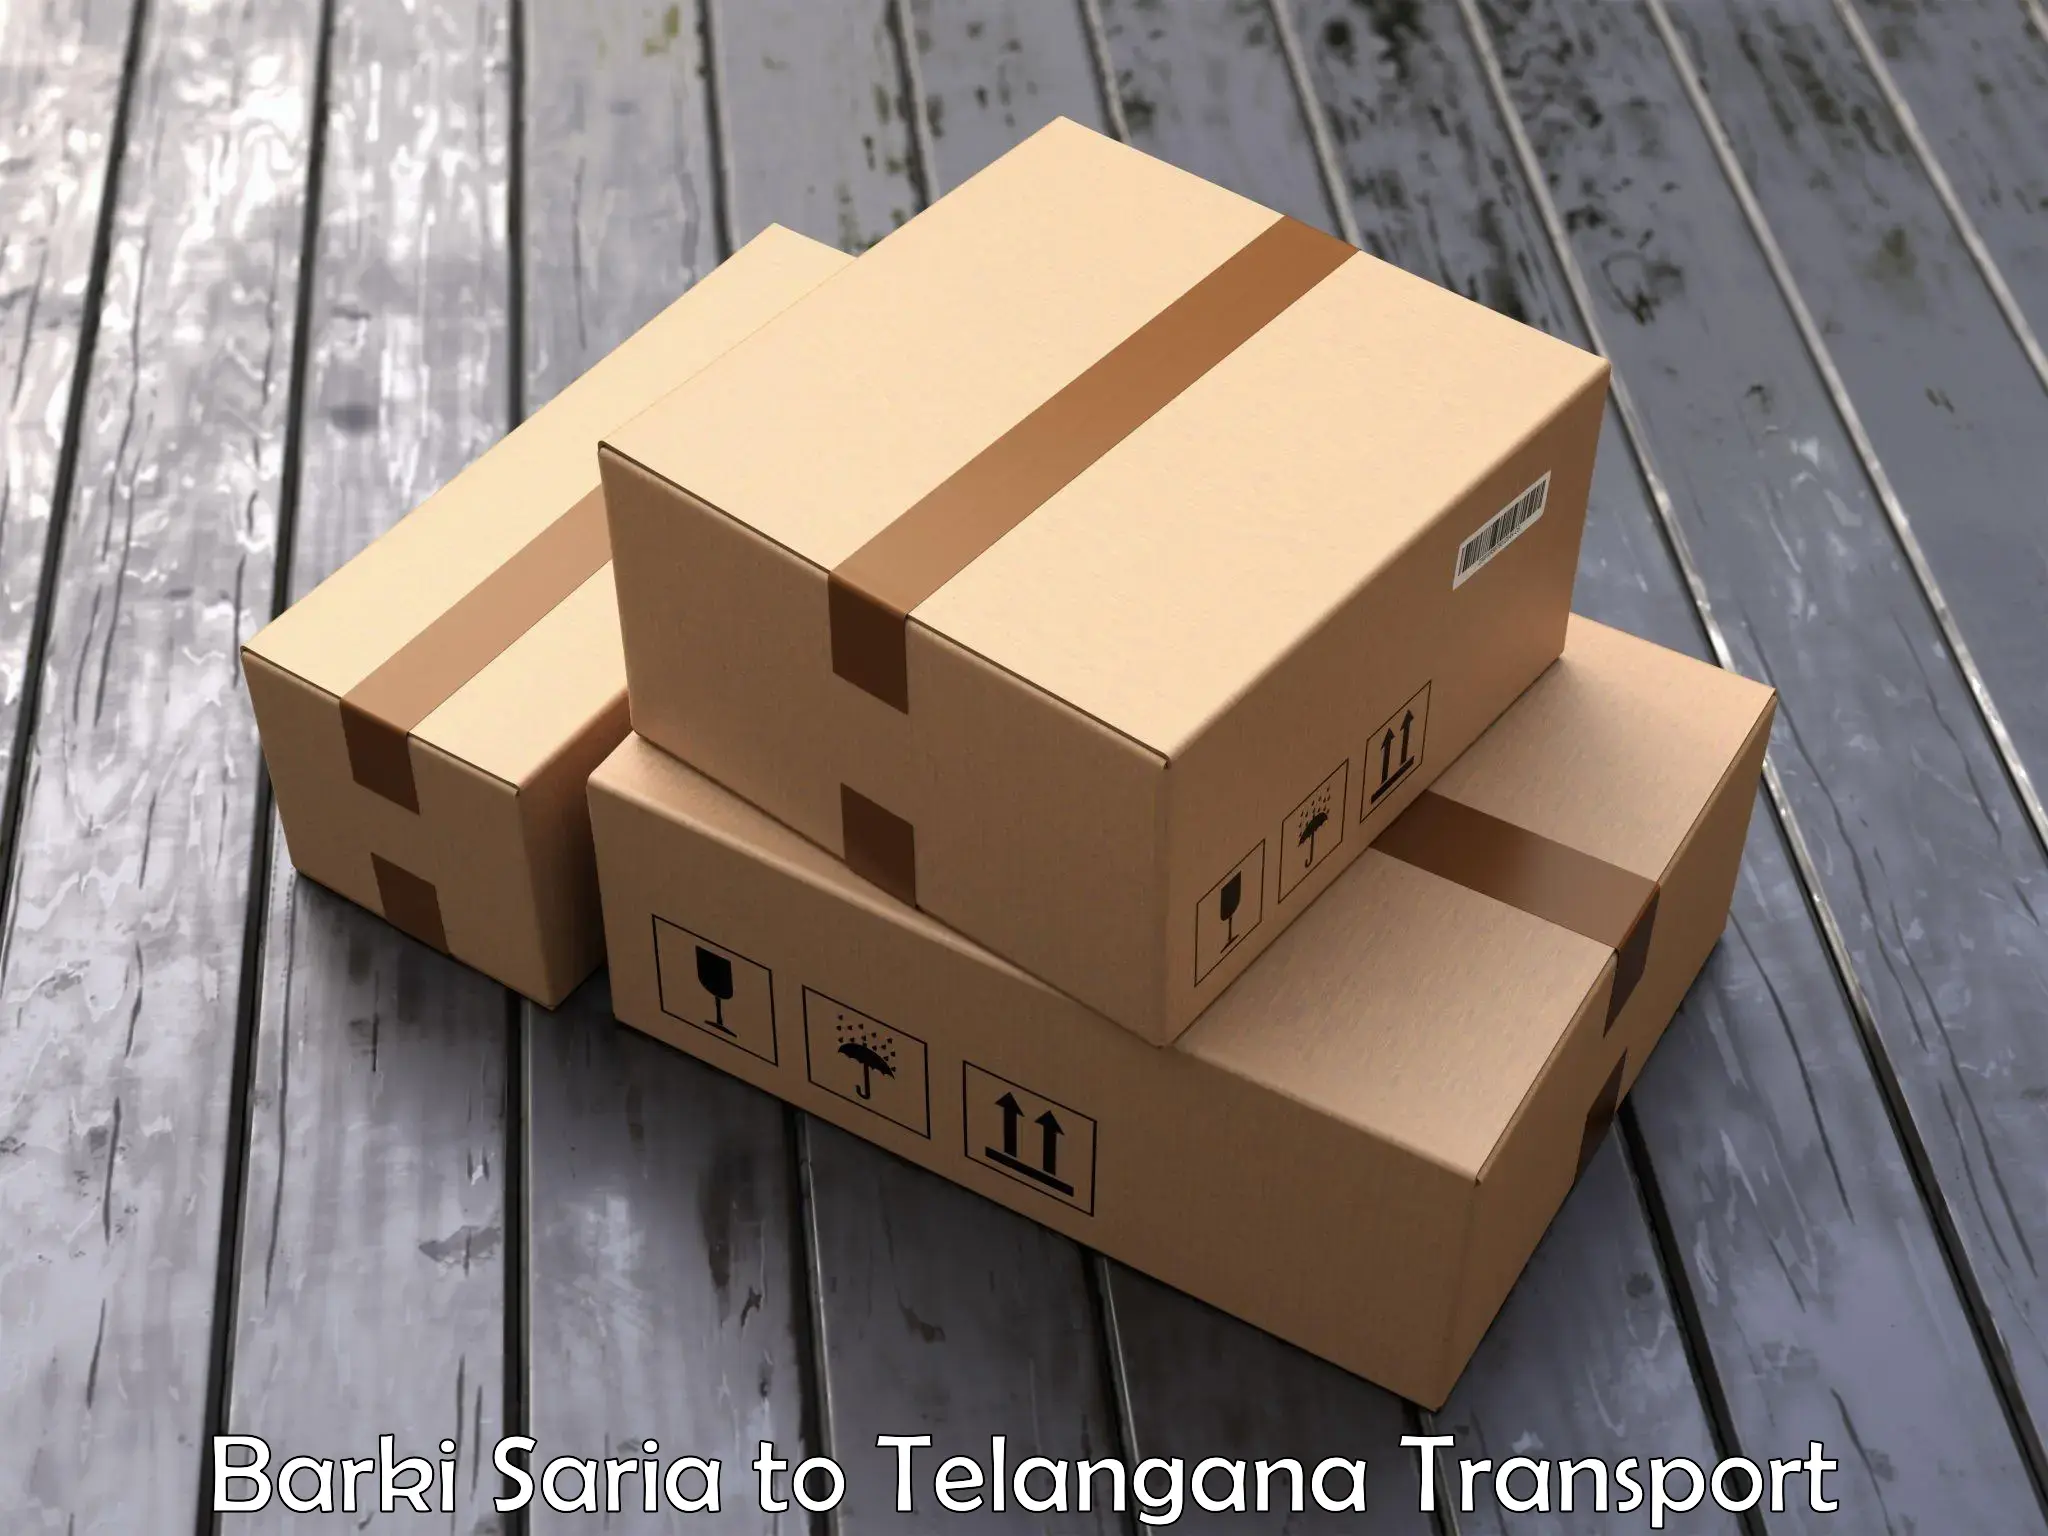 Logistics transportation services Barki Saria to Telangana